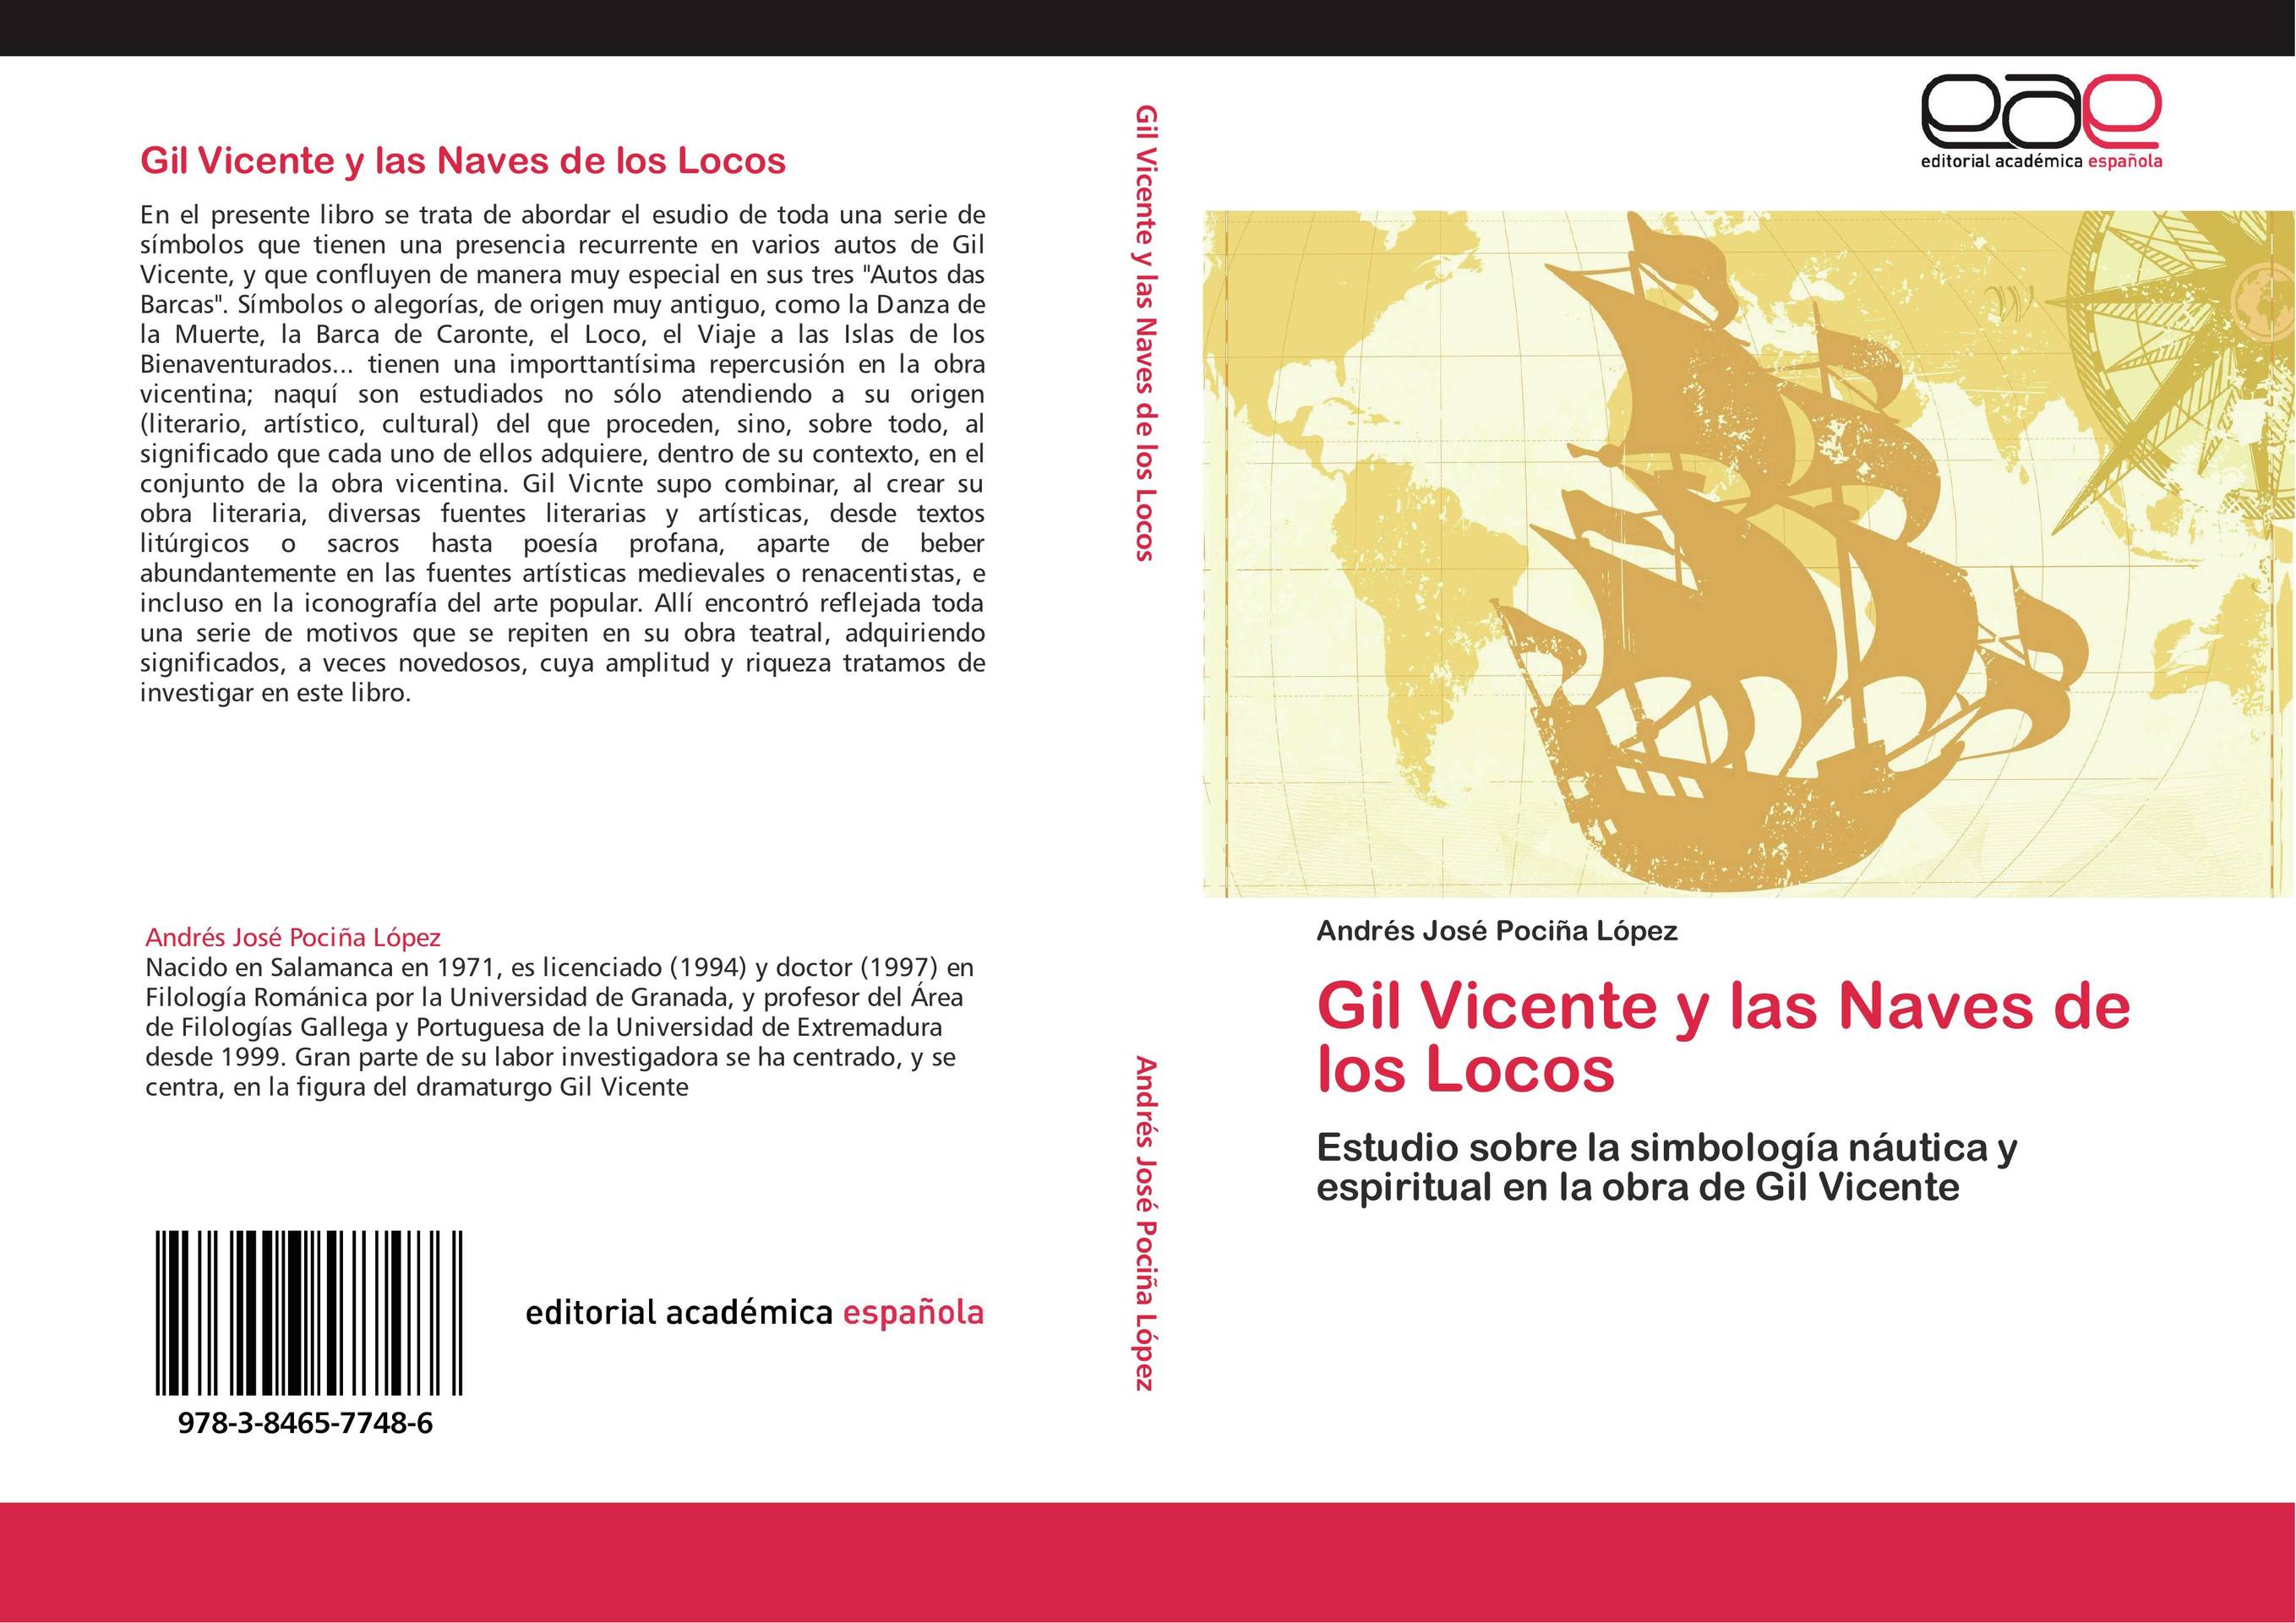 Gil Vicente y las Naves de los Locos